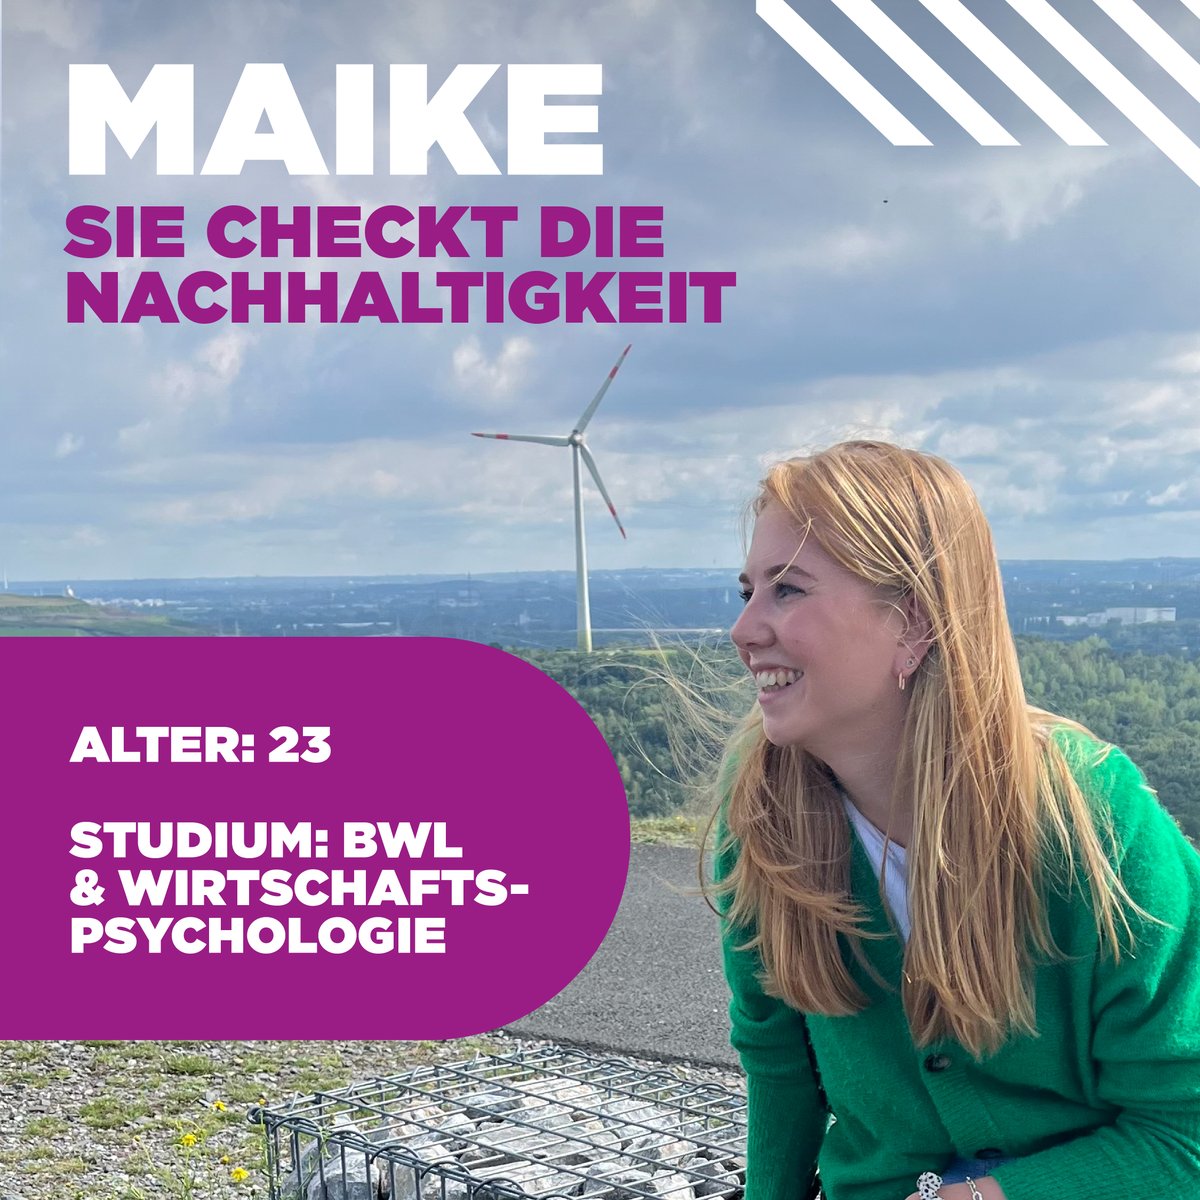 Maike Seelhöfer wollte einen Job mit Sinn – und es zog sie zu @Evonik_DE nach Essen. Hier testet und dokumentiert sie im Zuge ihres 'We want you'-Praktikums die Nachhaltigkeitsstrategie des Chemieunternehmens. Mehr zu Maike: metropole.ruhr/we-want-u/evon… #WeWantYou #WennDannHier